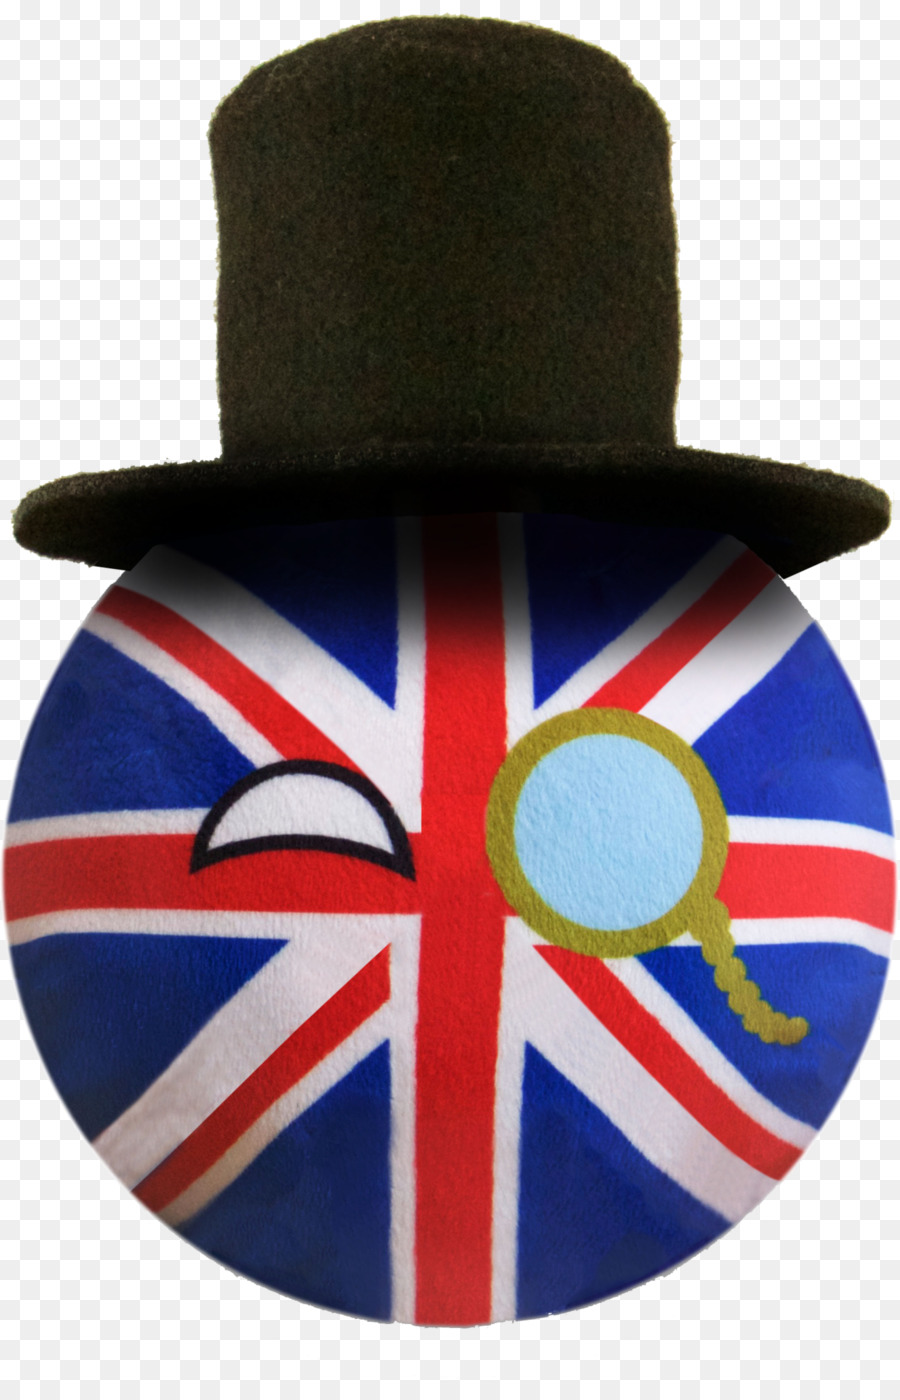 Bandiera del Regno Unito Cubo Polandball - regno unito